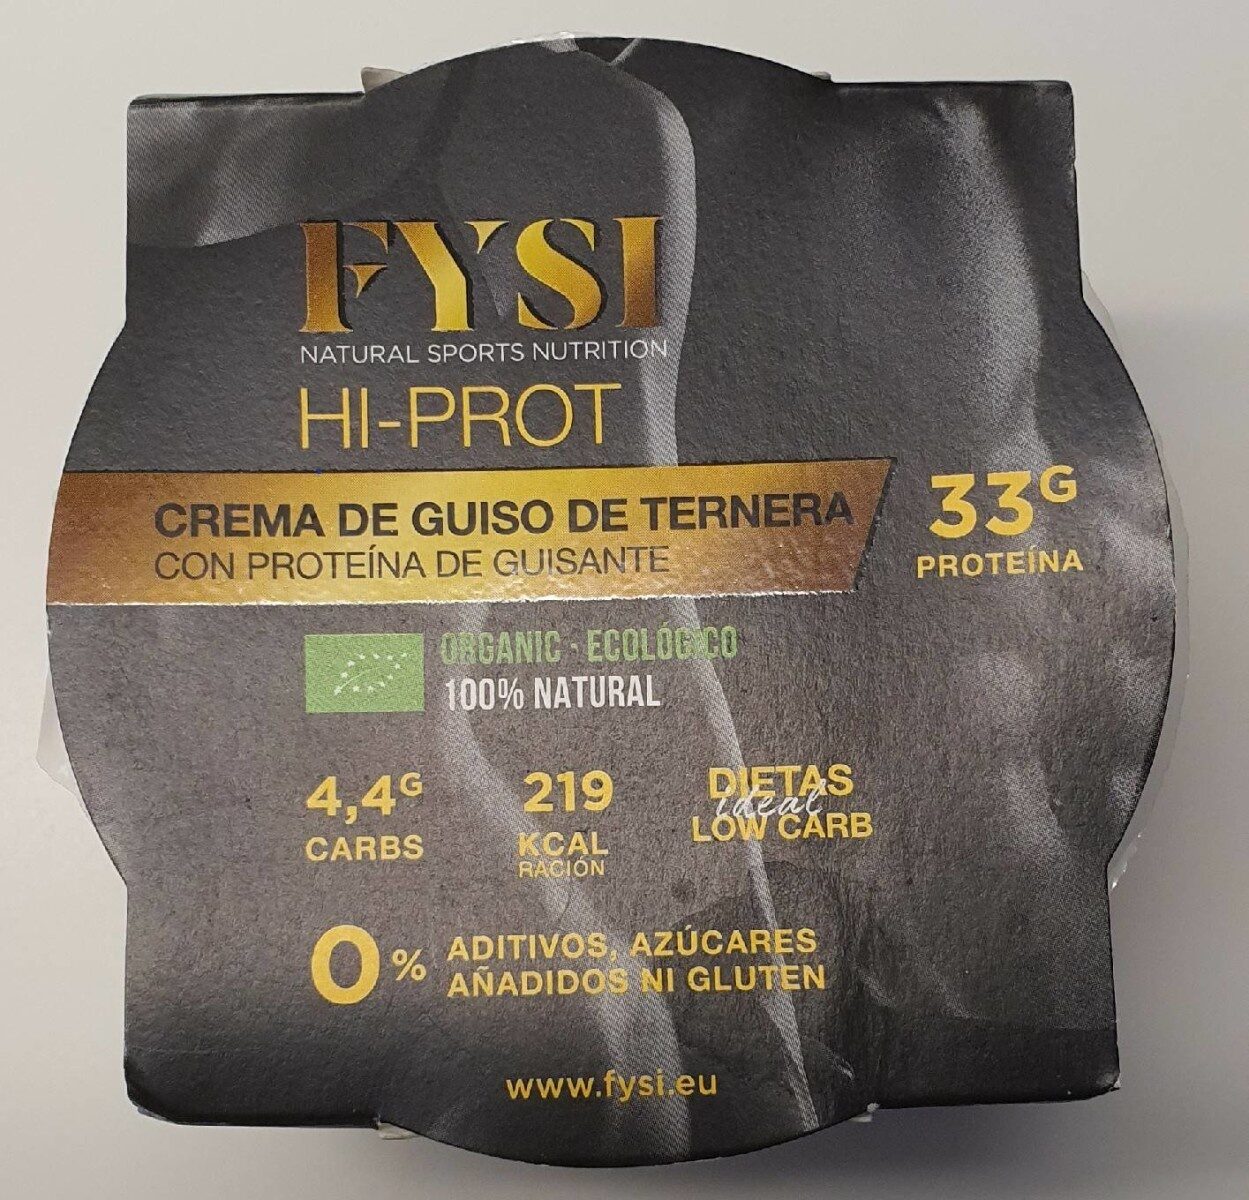 FYSI HI-PROT Crema de guiso de ternera con proteína de guisante - Product - es